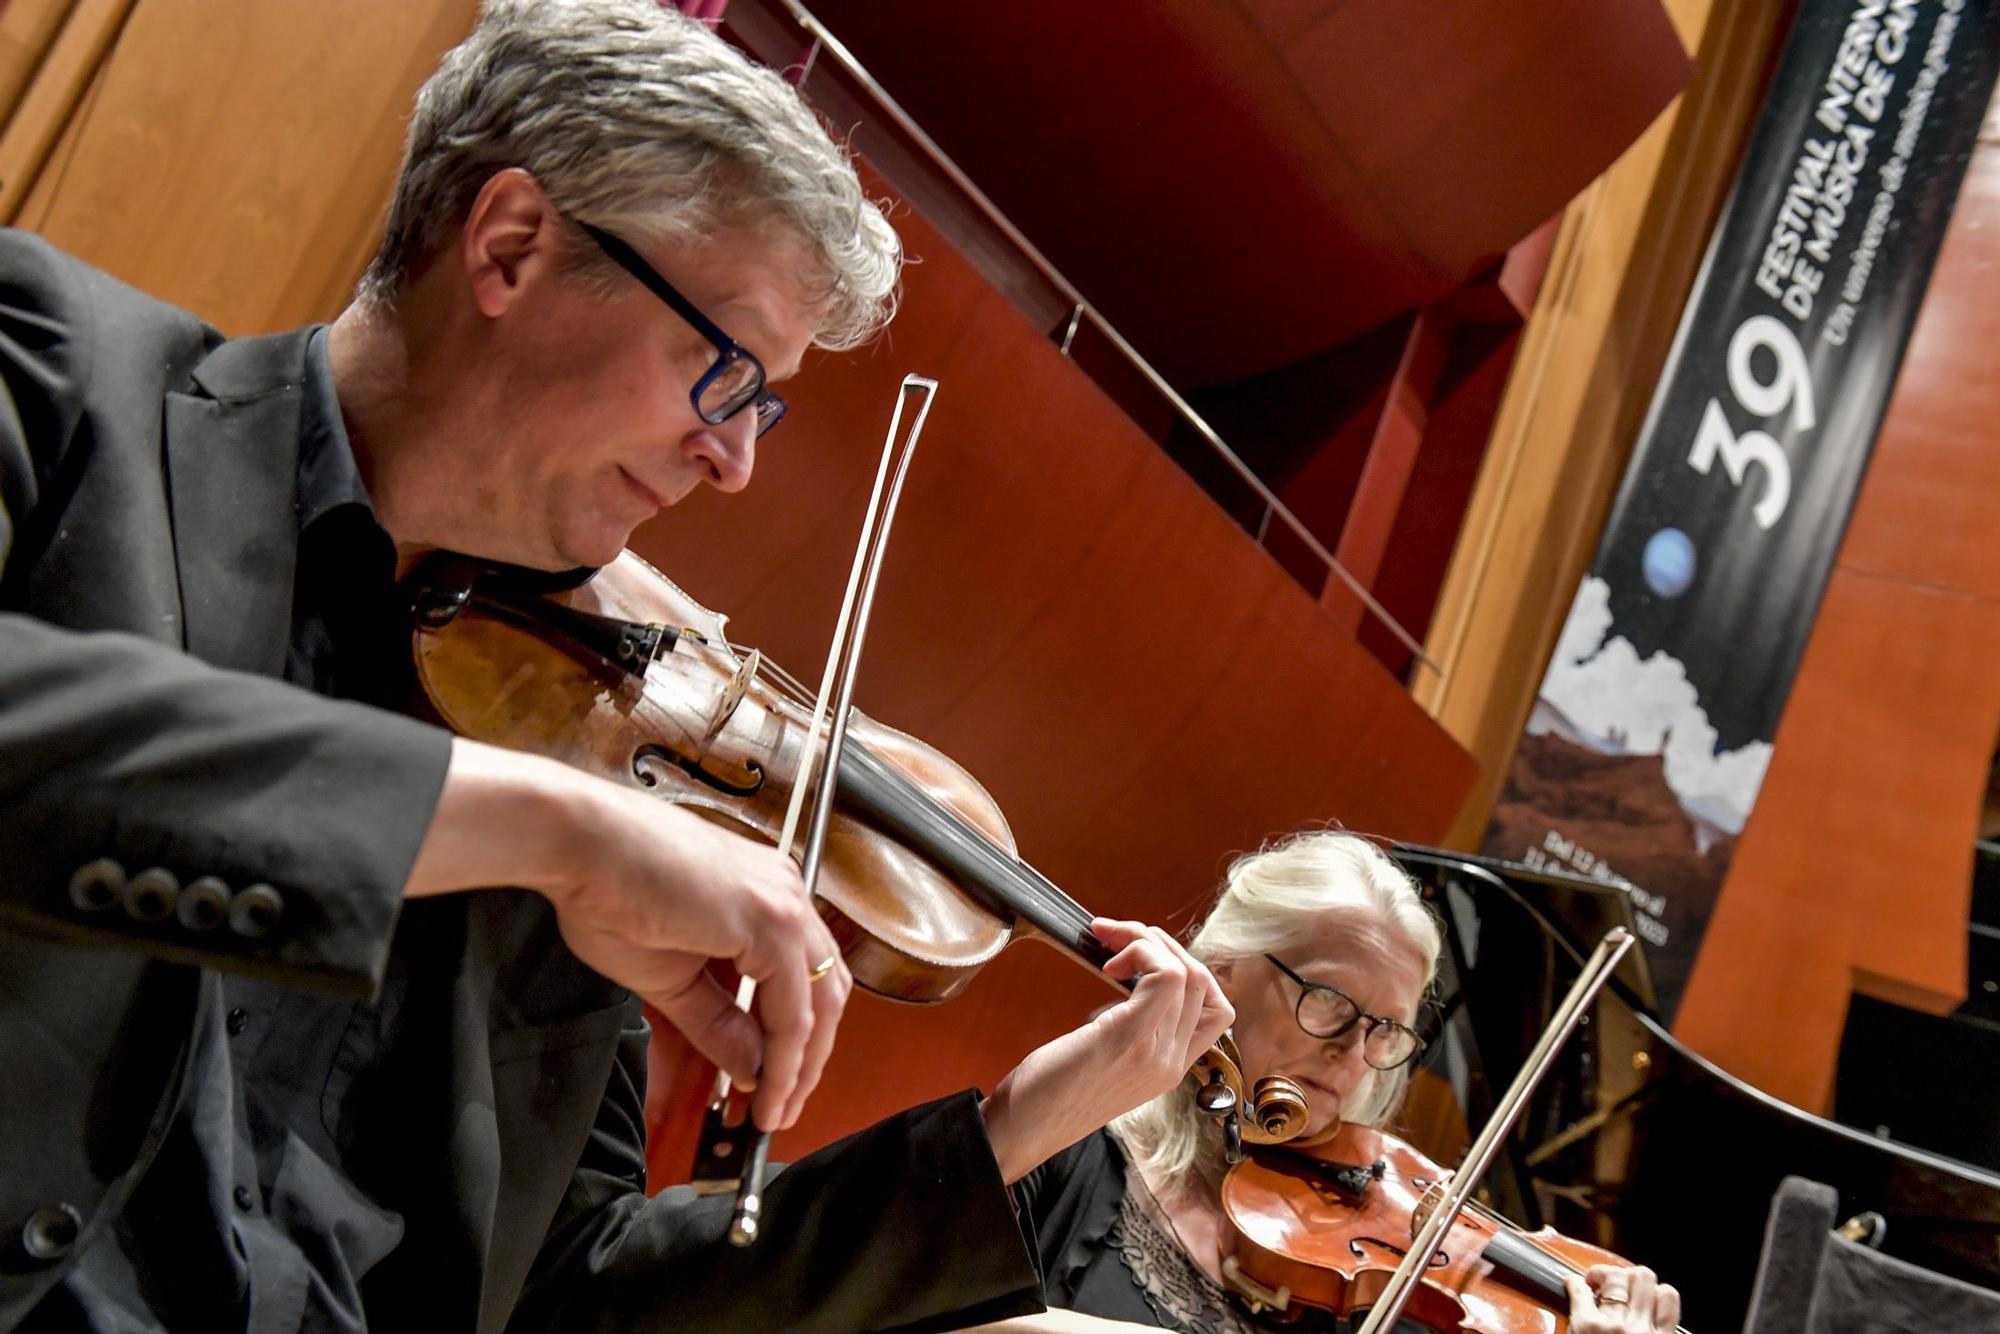 Inauguración del Festival de Música de Canarias: concierto de la BBC Philarmonic